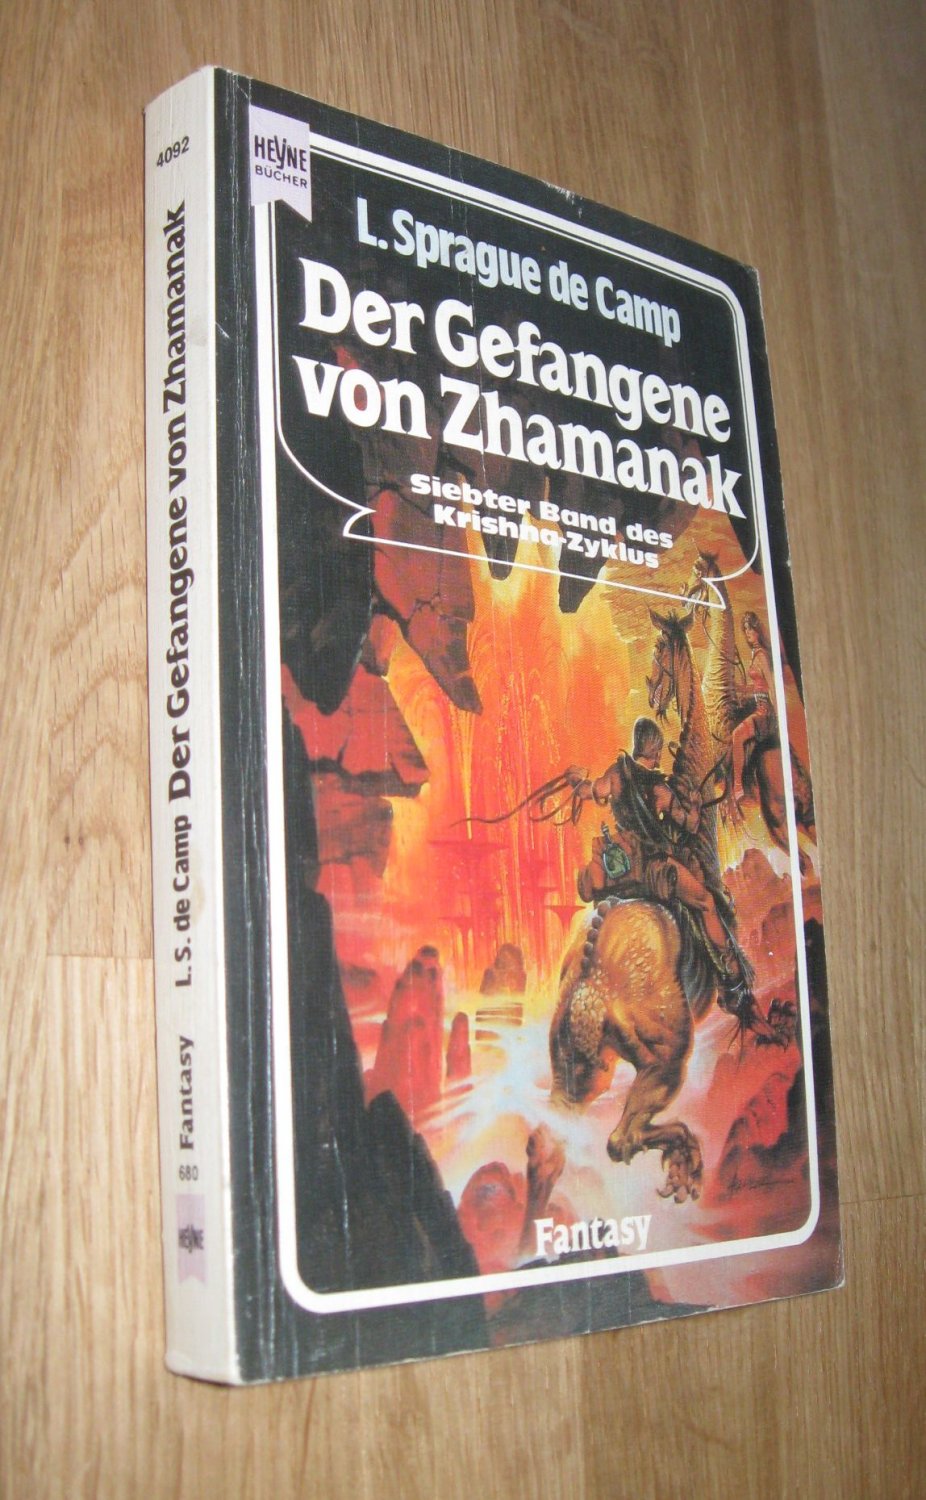 Roman des Krishna-Zyklus; Teil: Bd. 7., Der Gefangene von Zhamanak - L. Sprague De Camp